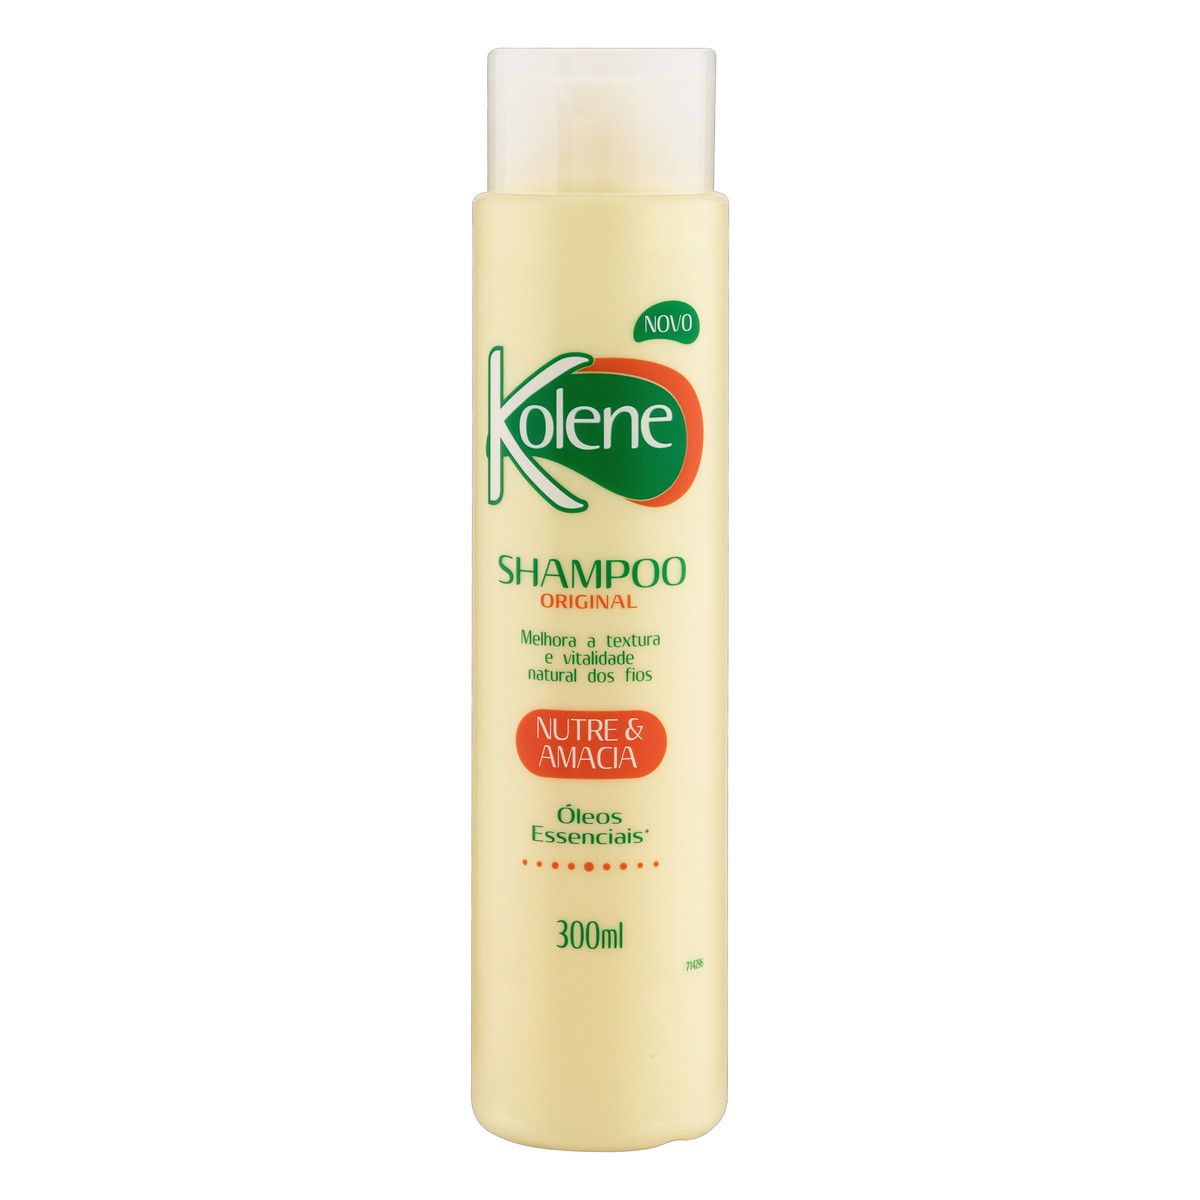 Shampoo Kolene Original Frasco 300ml